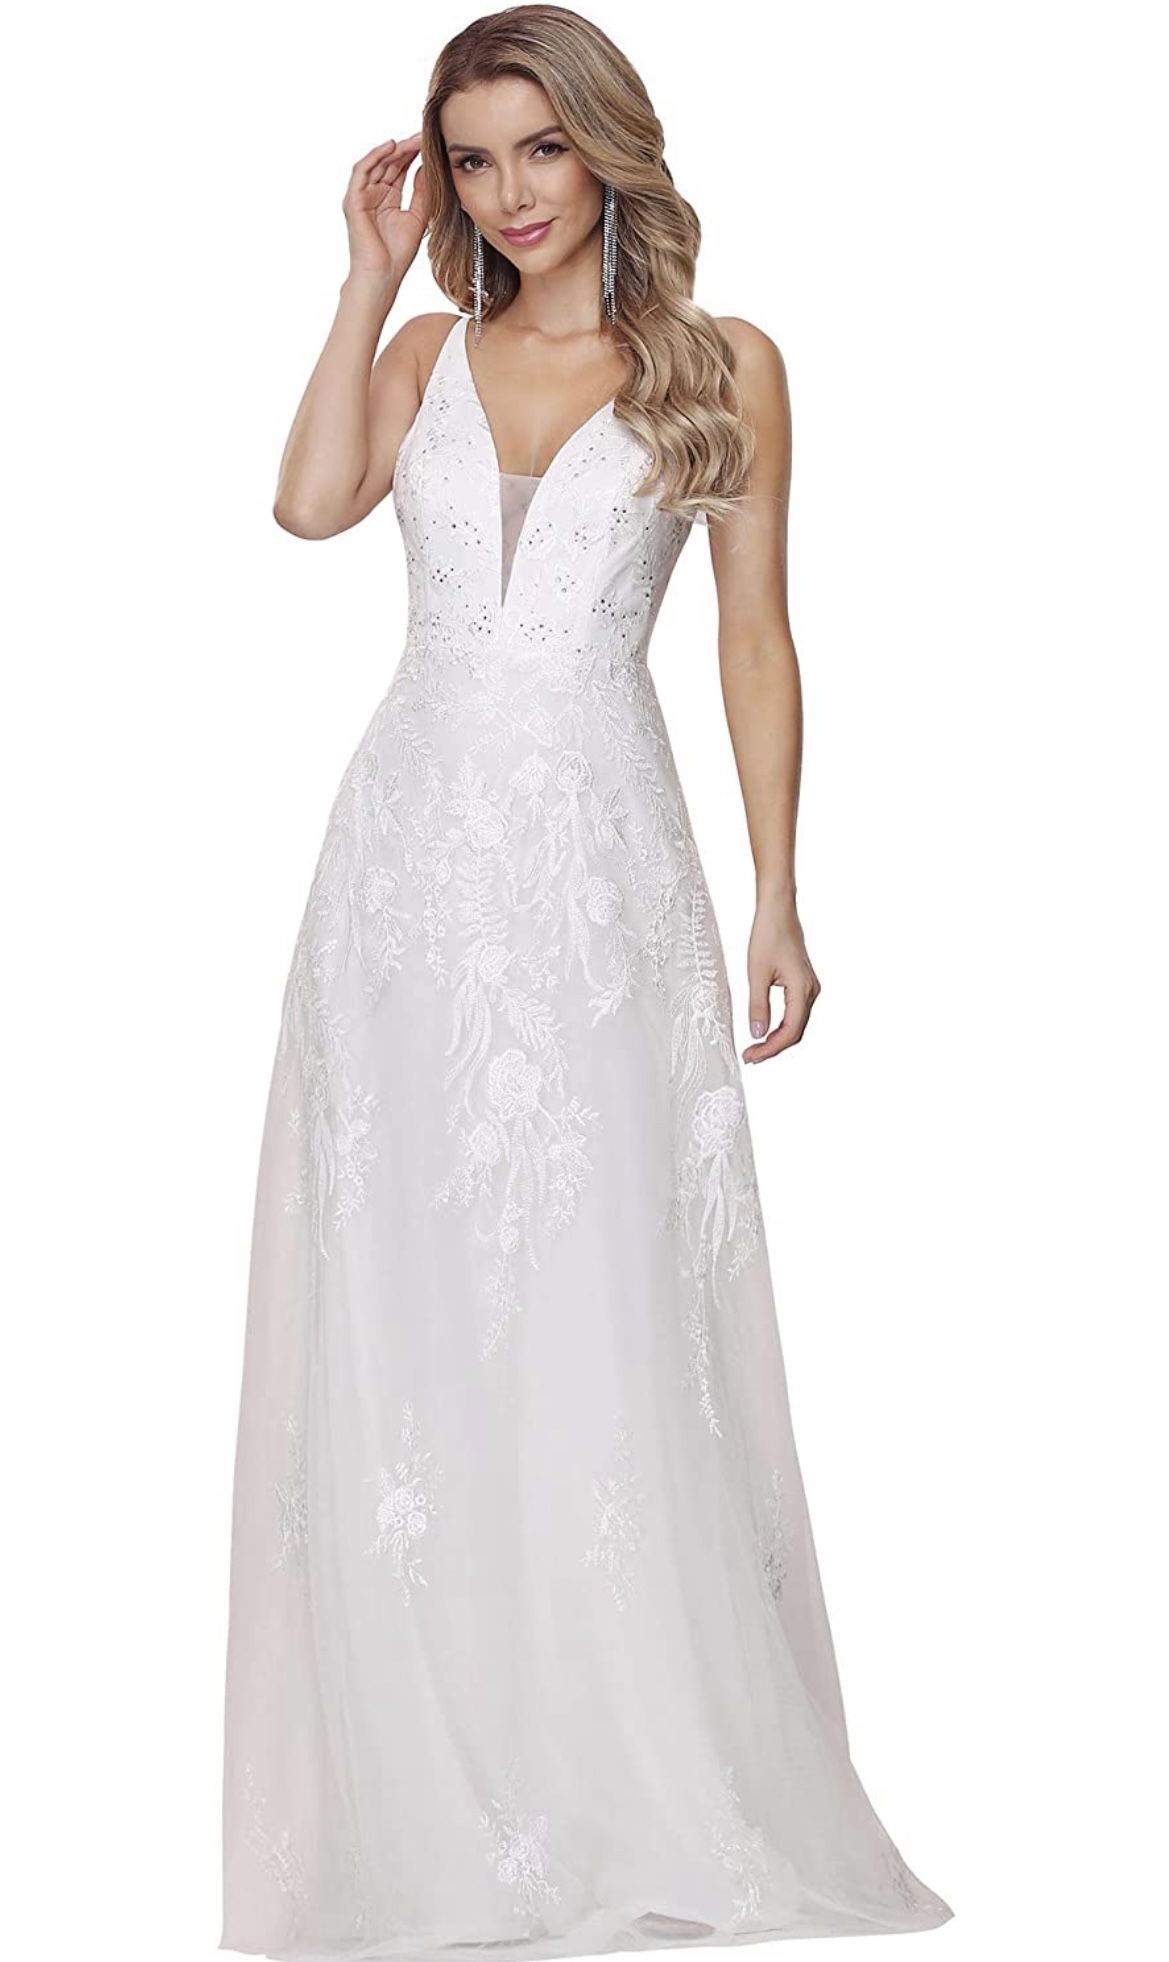 New Wedding Dress Size 8 ON SALE !!!